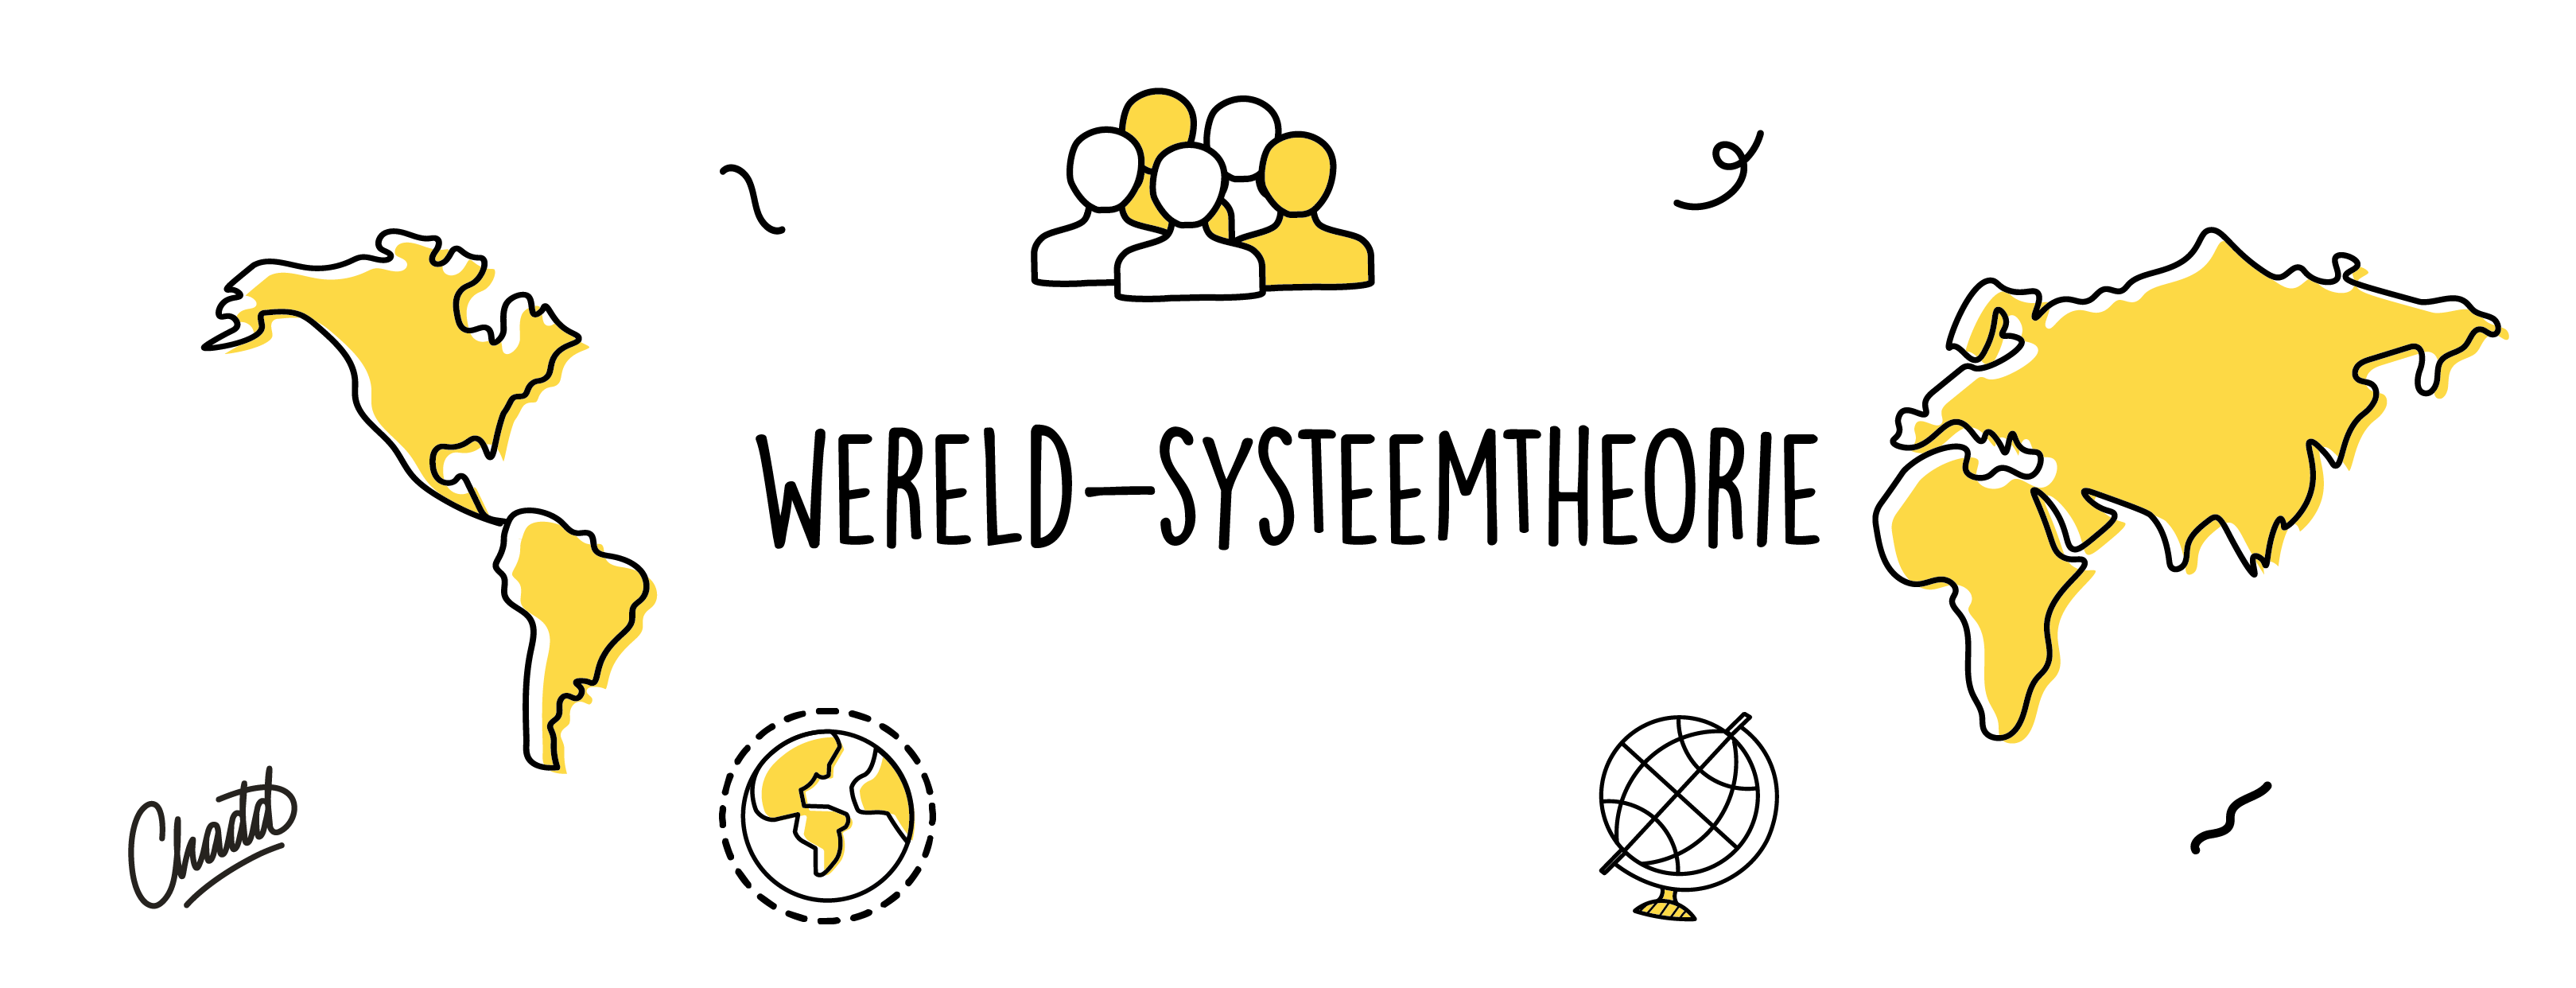 Wereld-systeemtheorie